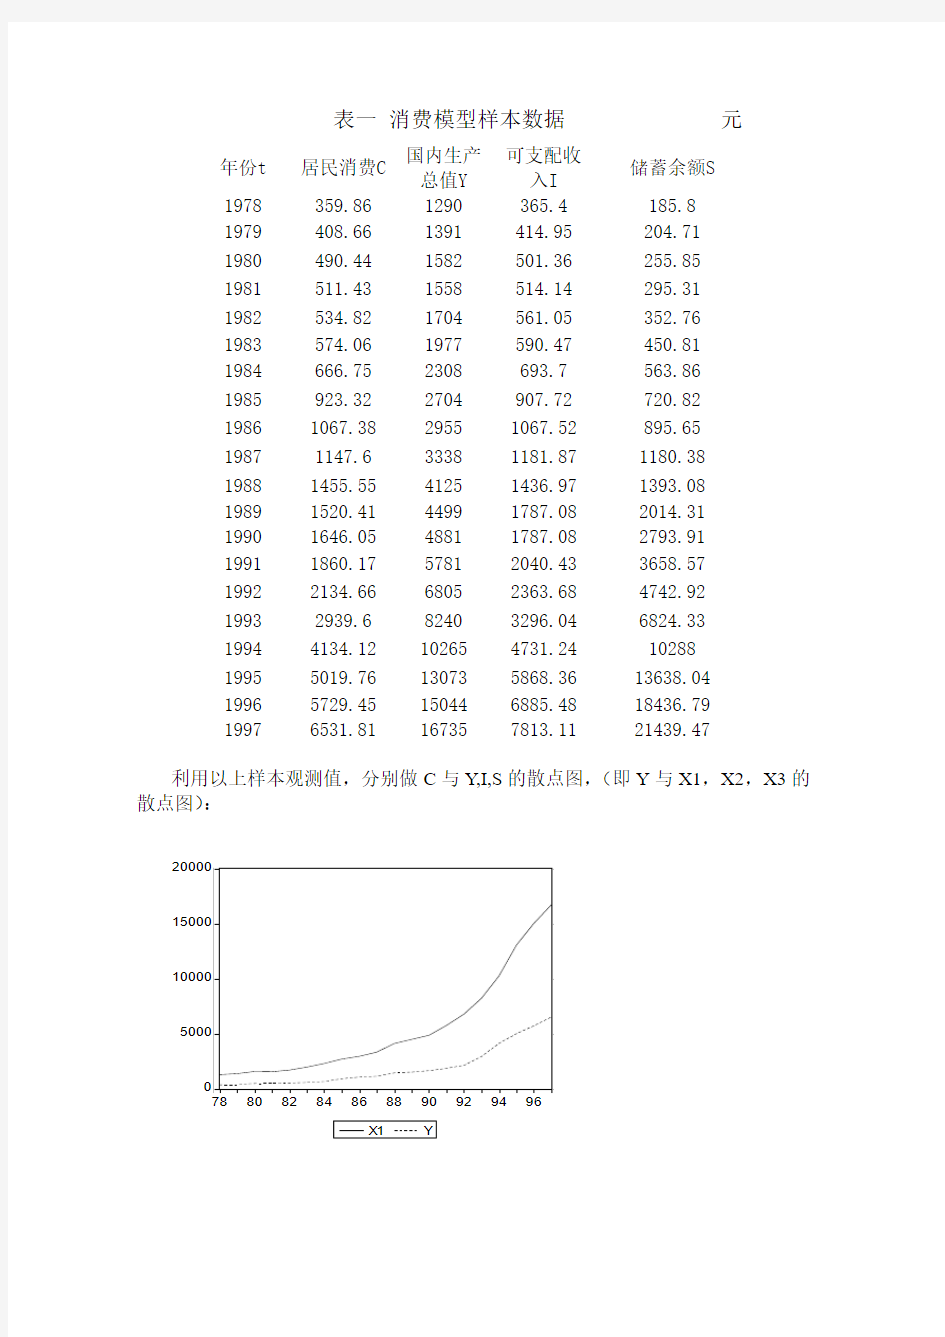 北京市城镇居民消费函数模型